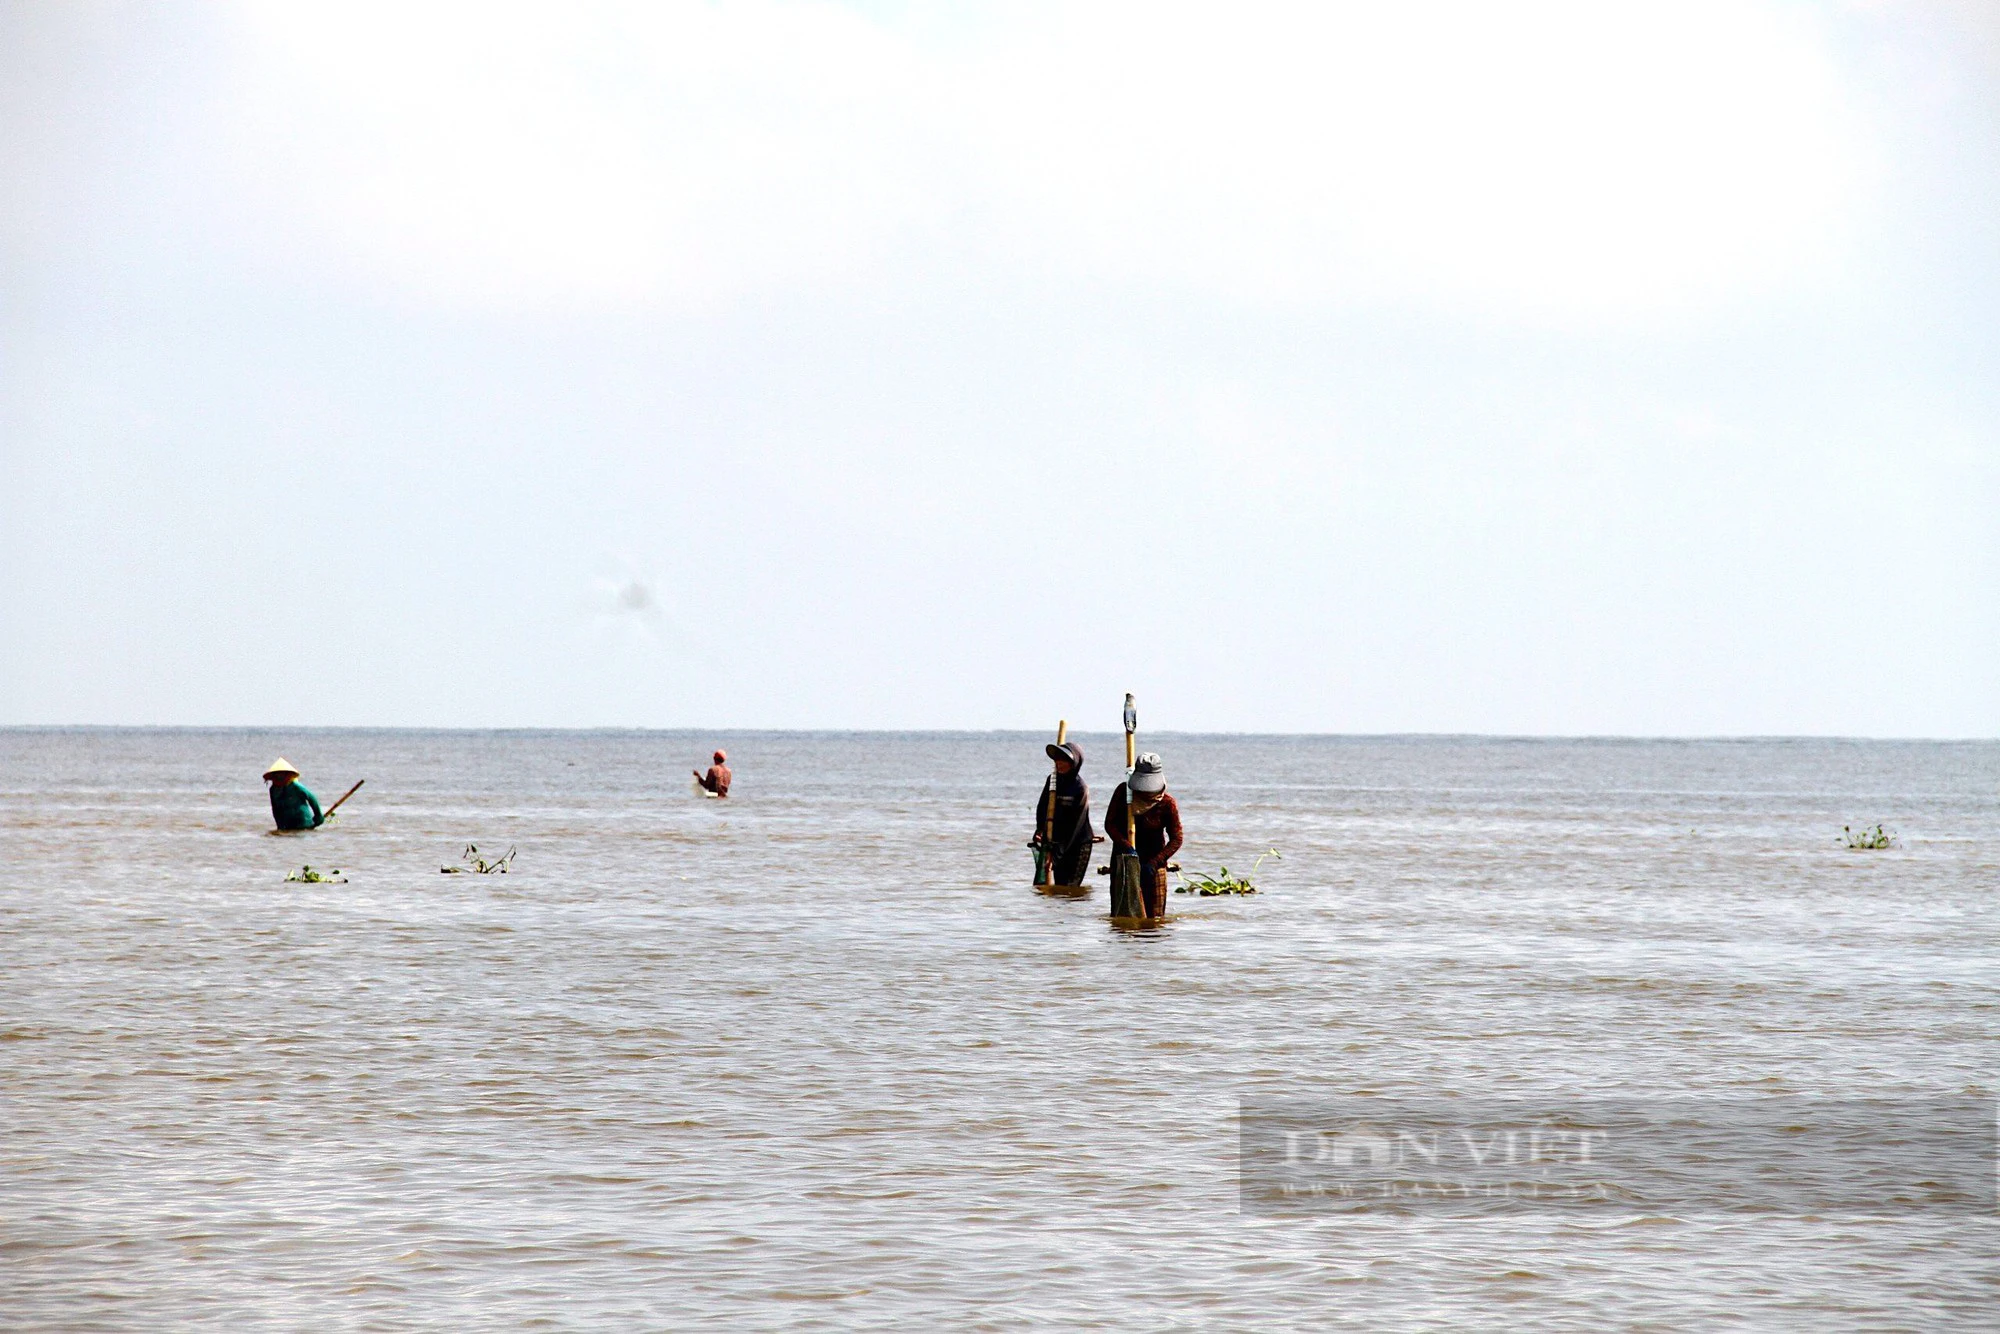 Ngư dân Hà Tĩnh mưu sinh nơi cửa biển trong thời tiết mưa dầm giá rét - Ảnh 1.